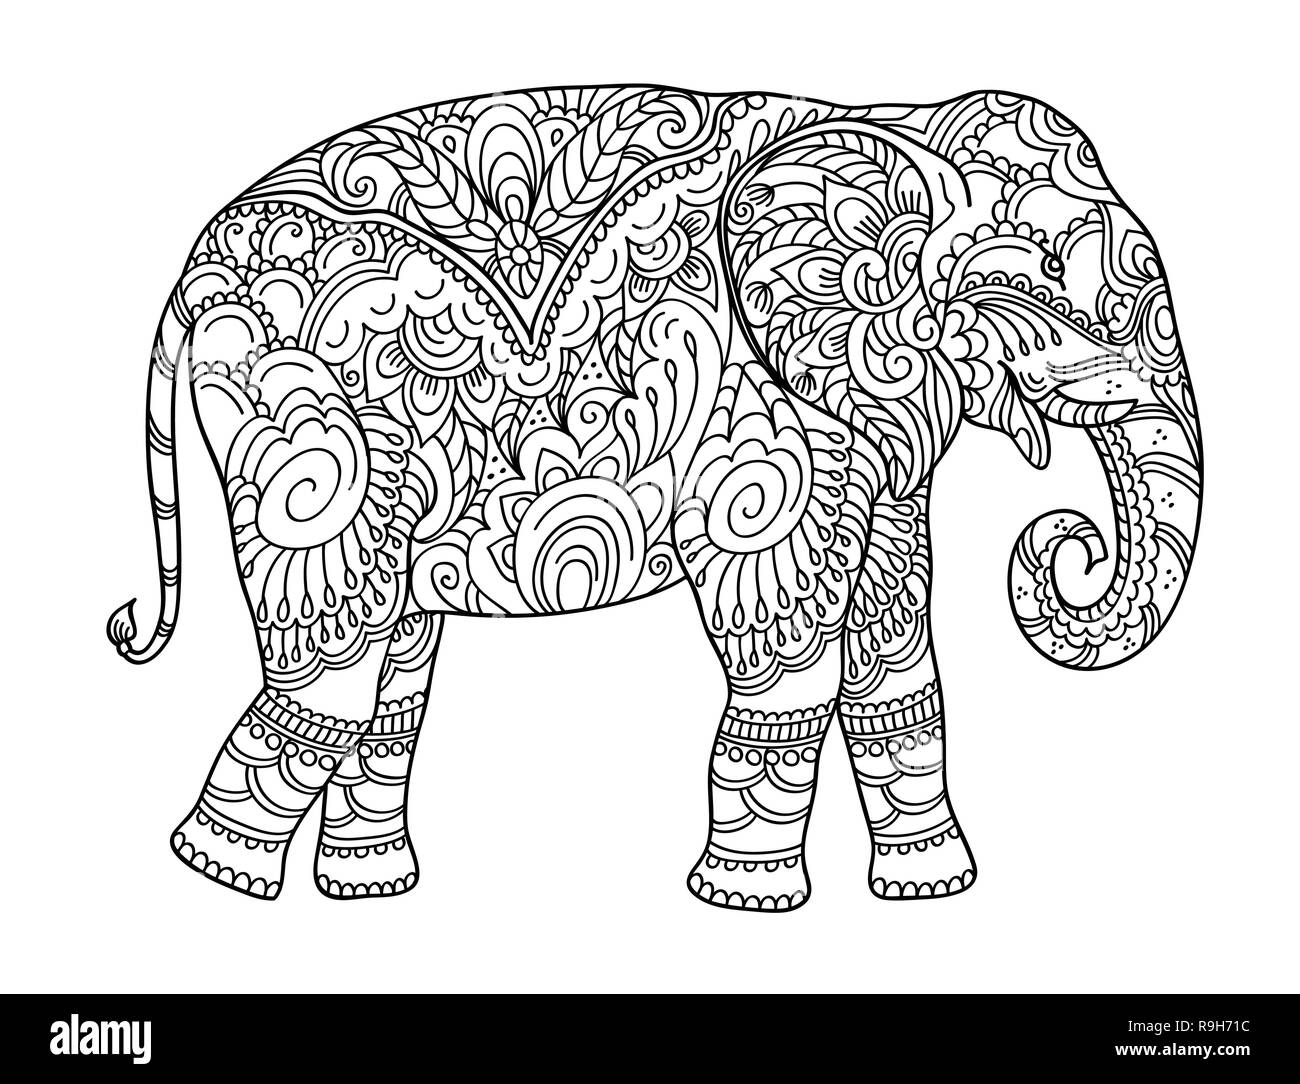 malvorlagen erwachsene elefant